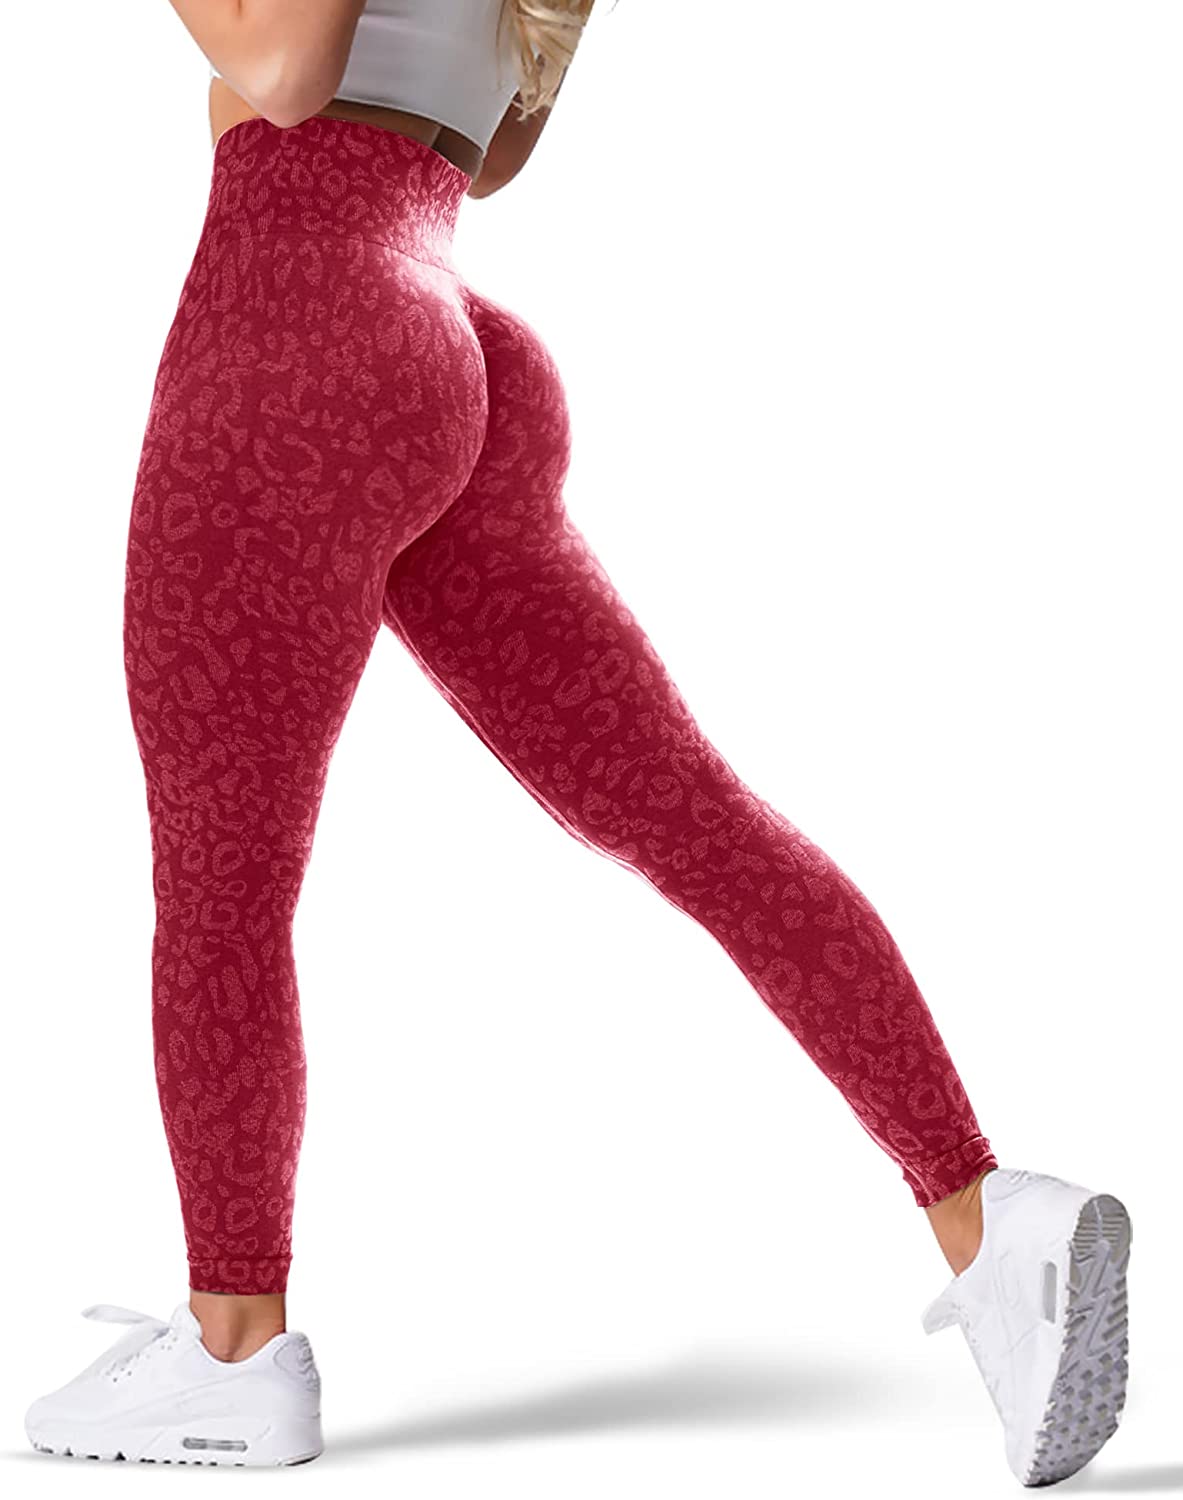 WodoWei Women's Scrunch Butt Lifting Workout Leggings for Women